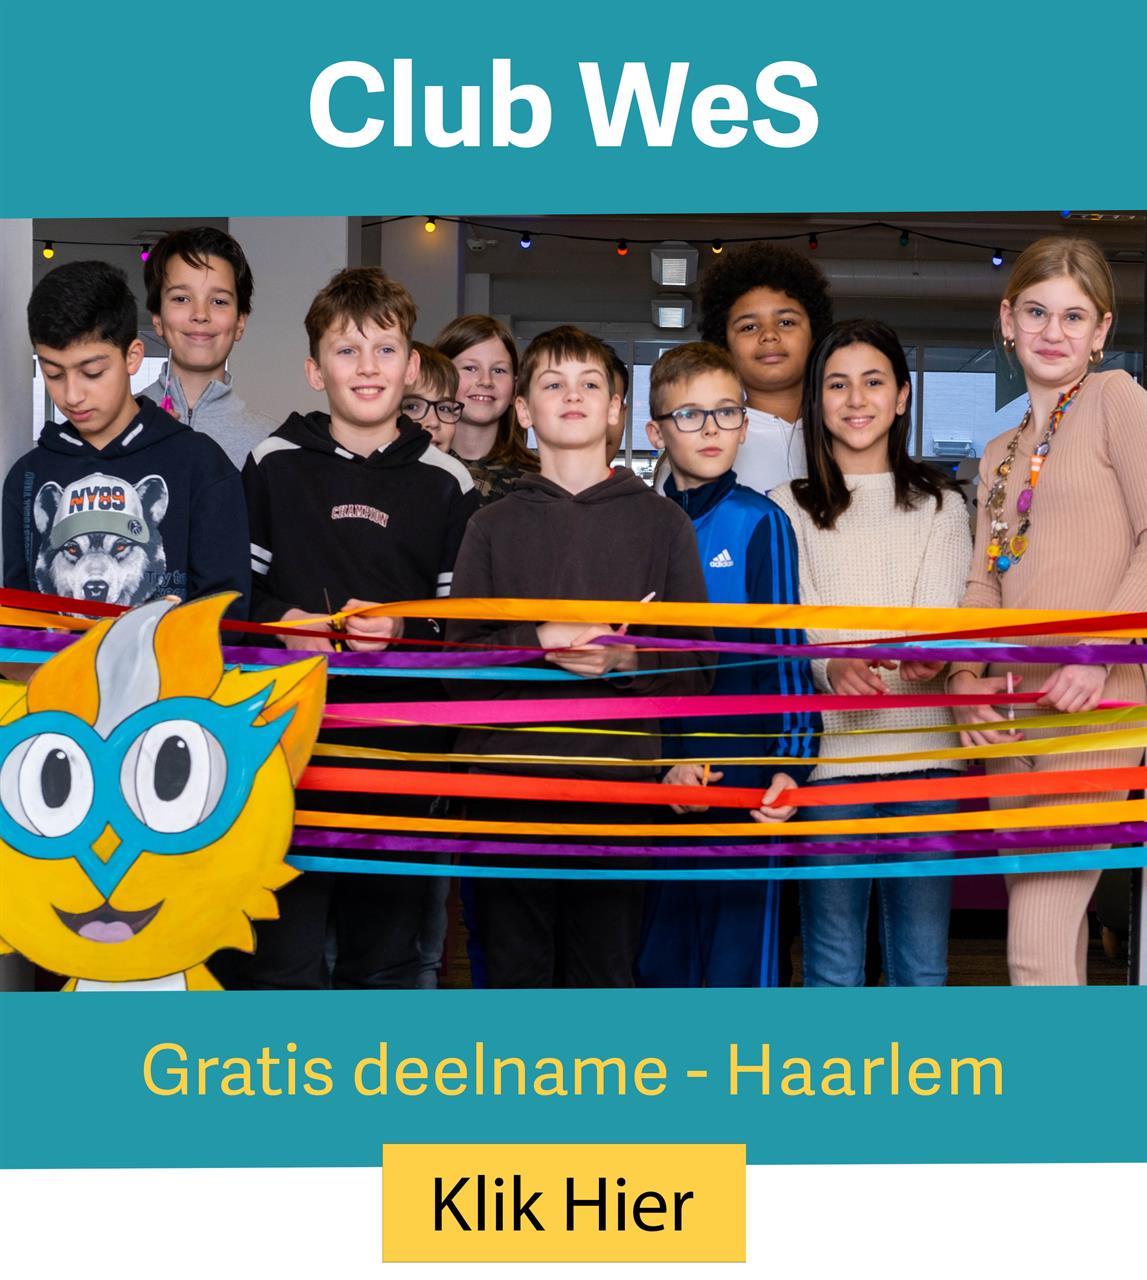 Club WeS is er voor alle kinderen van 8 t/m 12 jaar